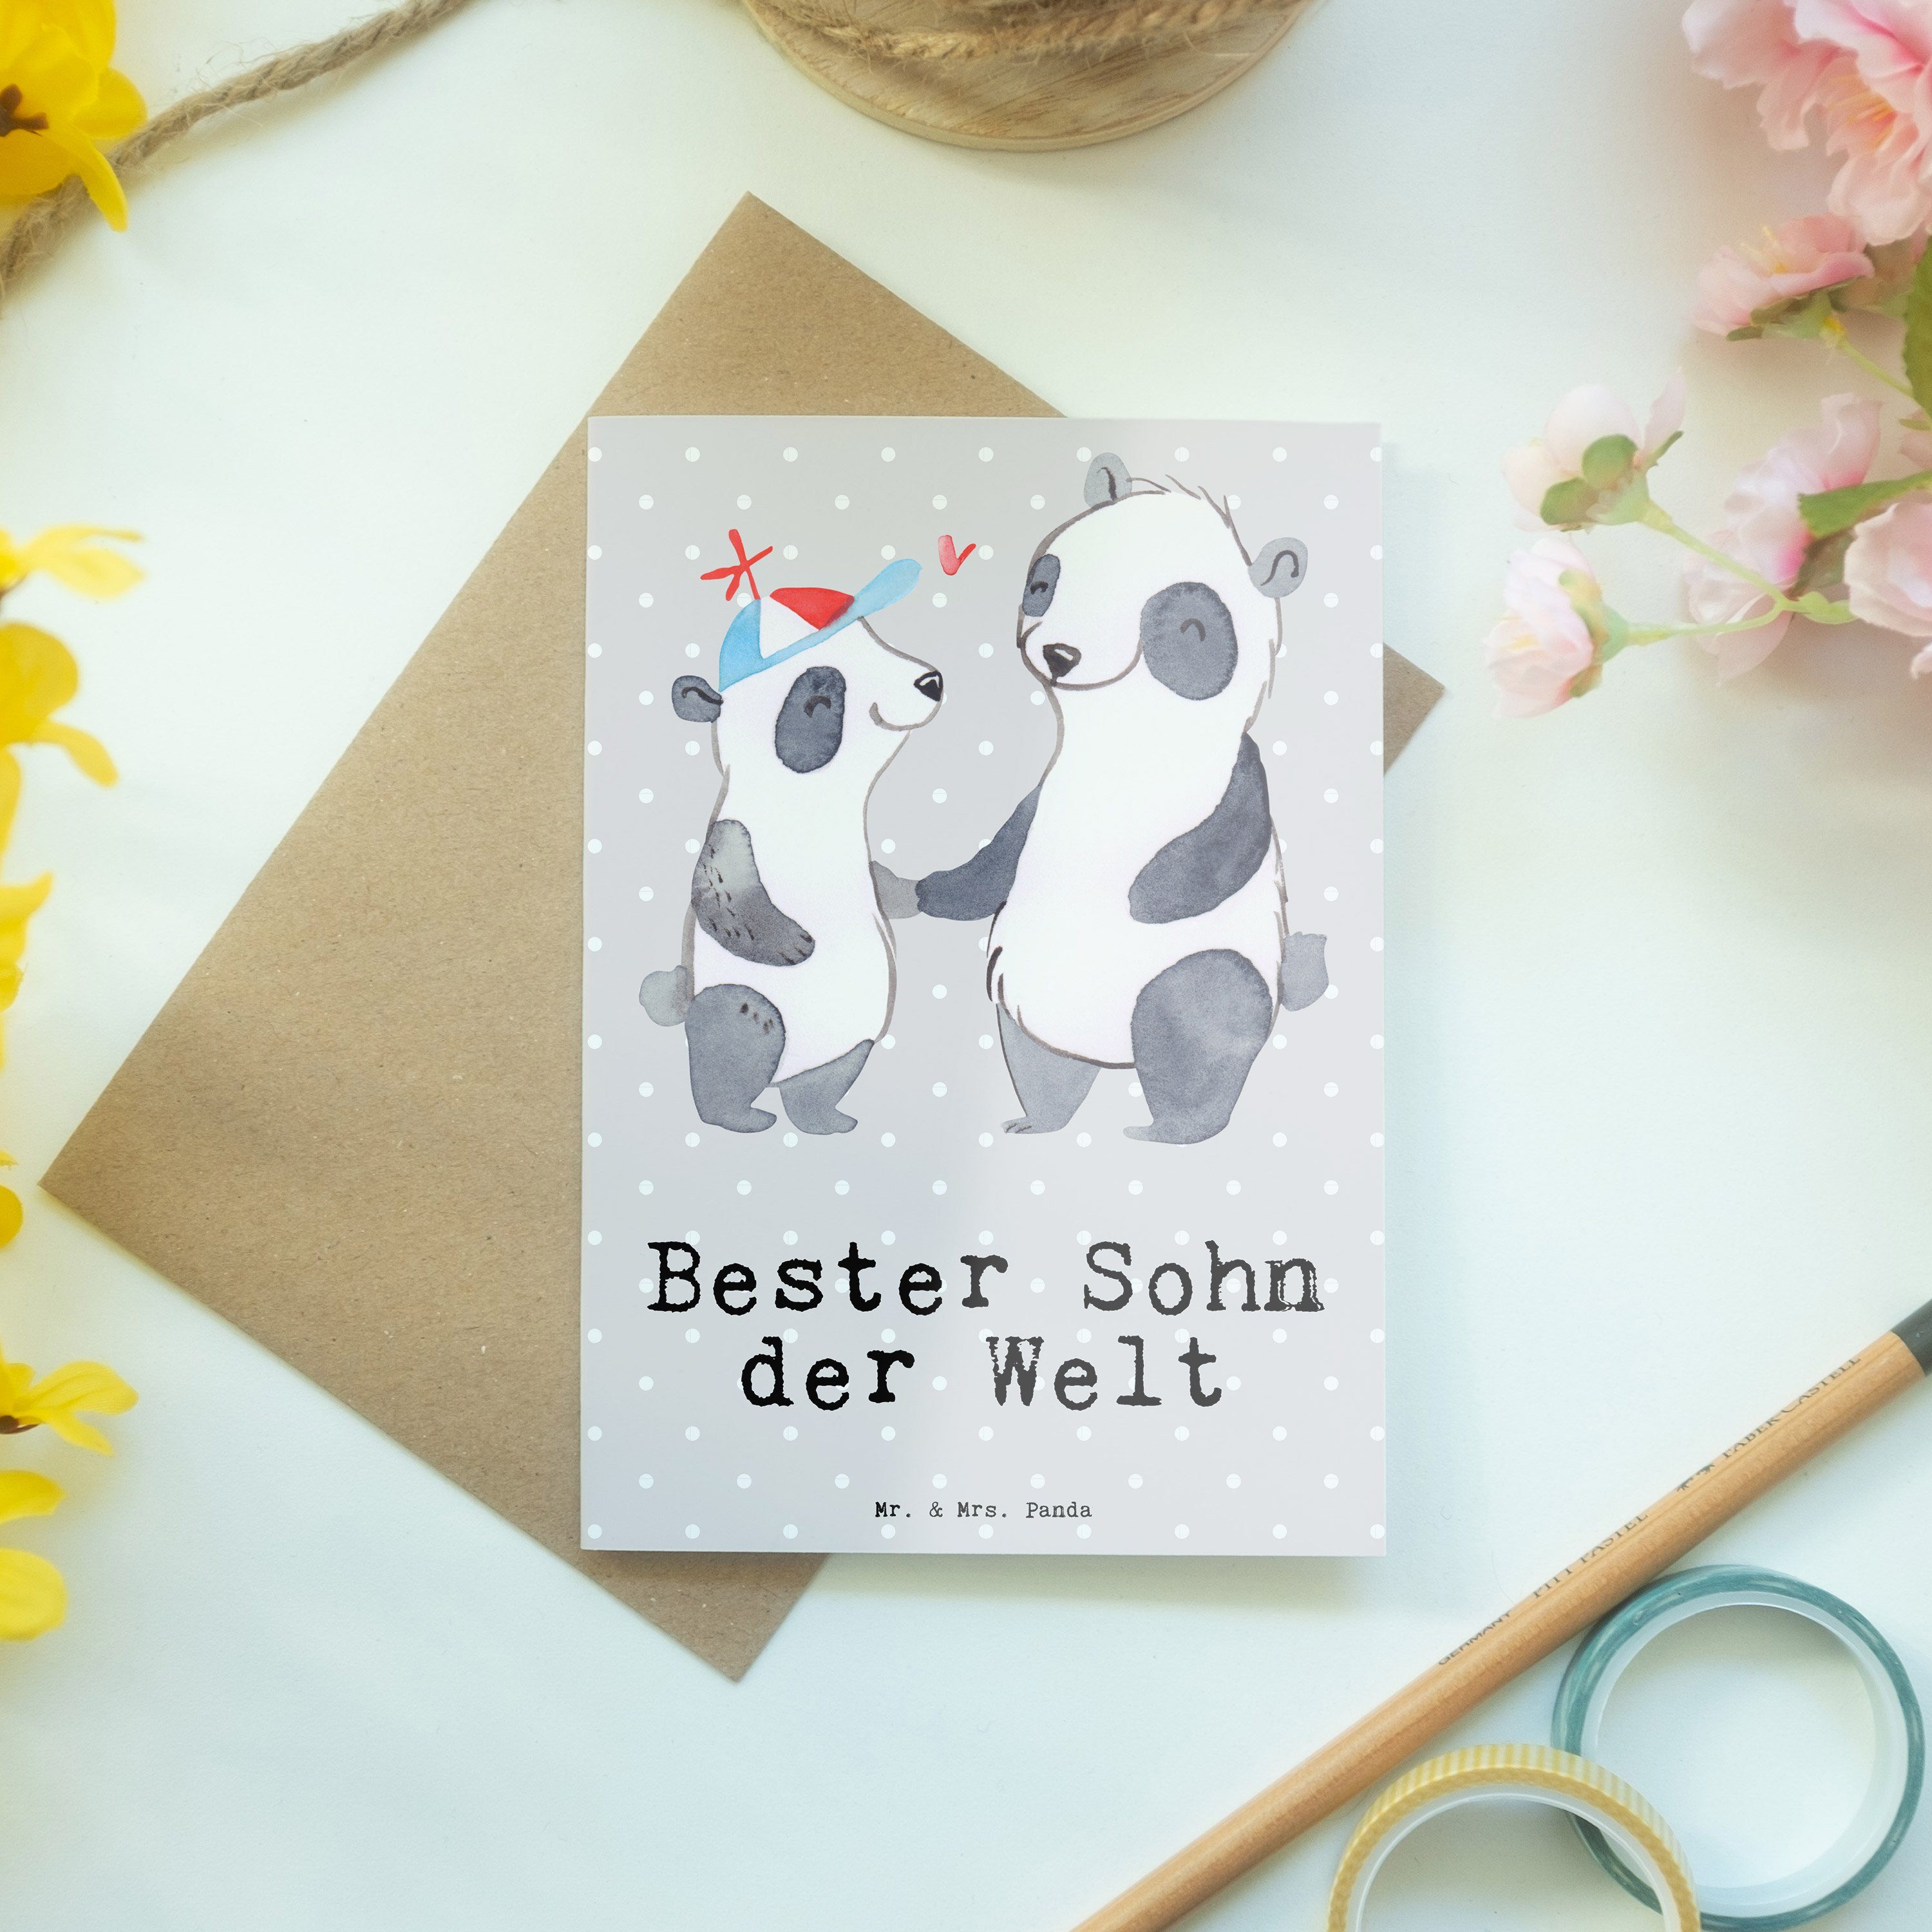 Mr. & Mrs. Welt Grau Söh - Sohn Panda Geschenk, Pastell Grußkarte Bester Panda - Dankeschön, der